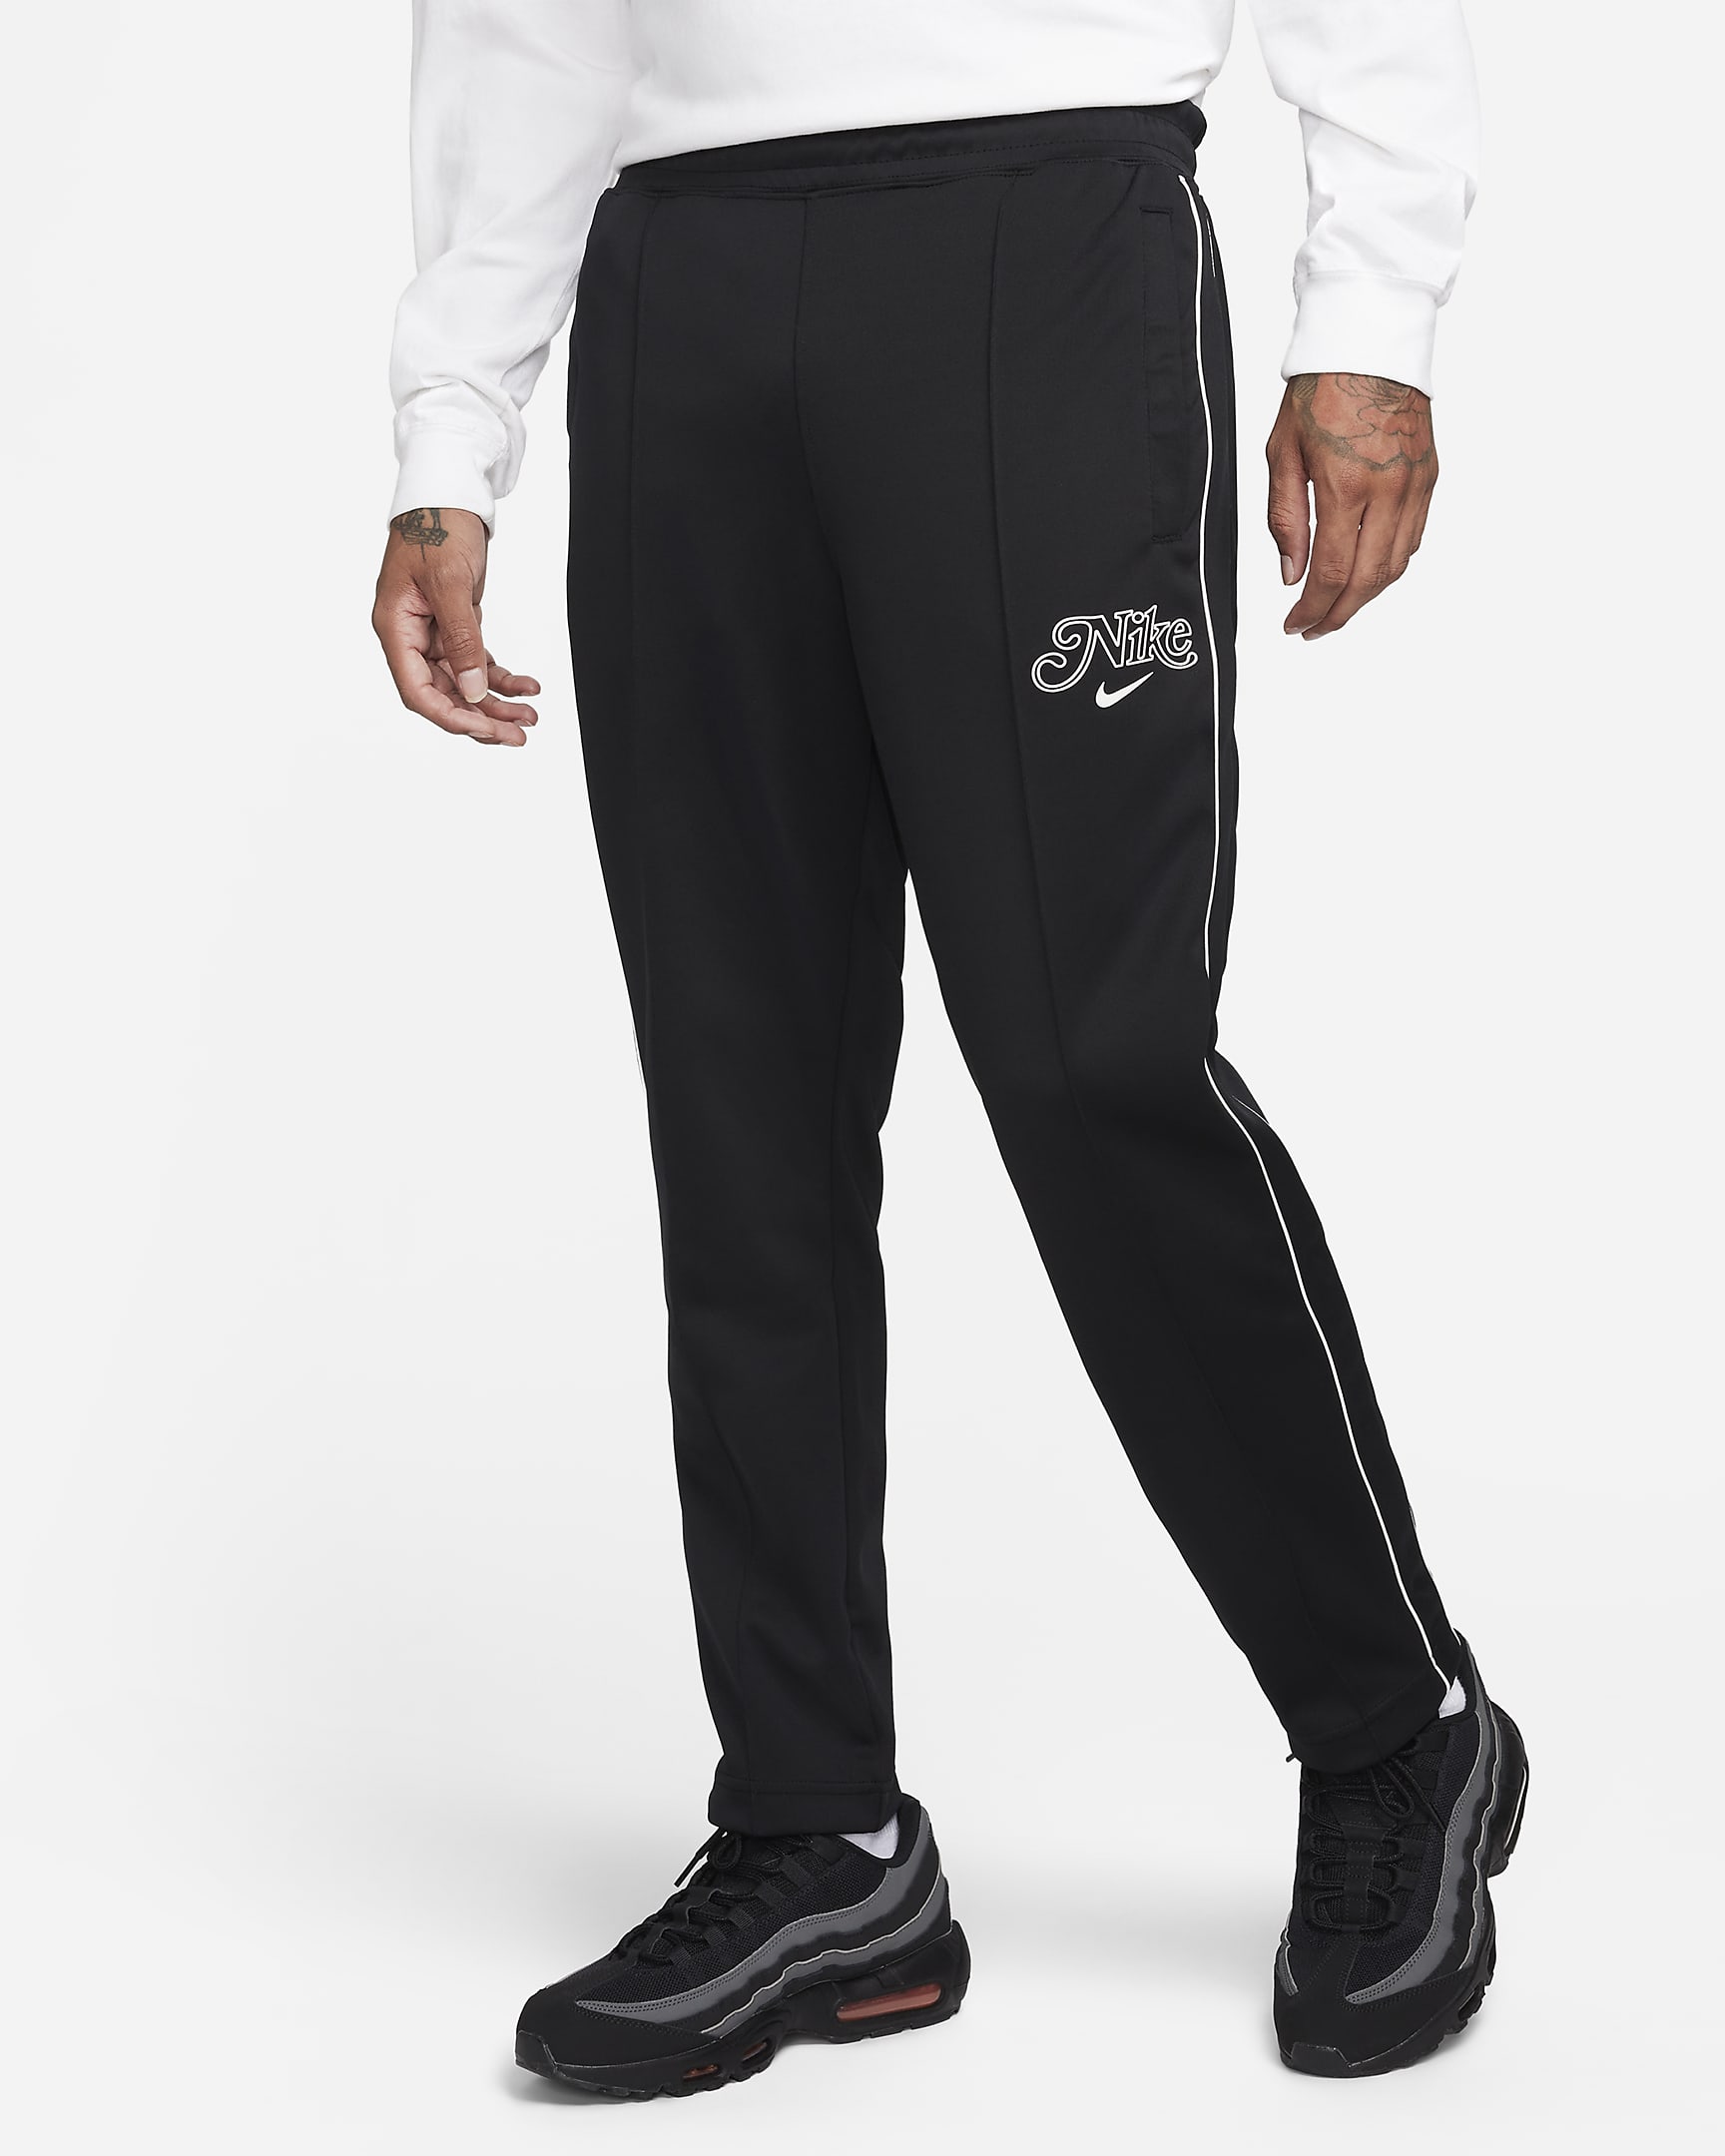 Nike Sportswear Men's Trousers. Nike IL